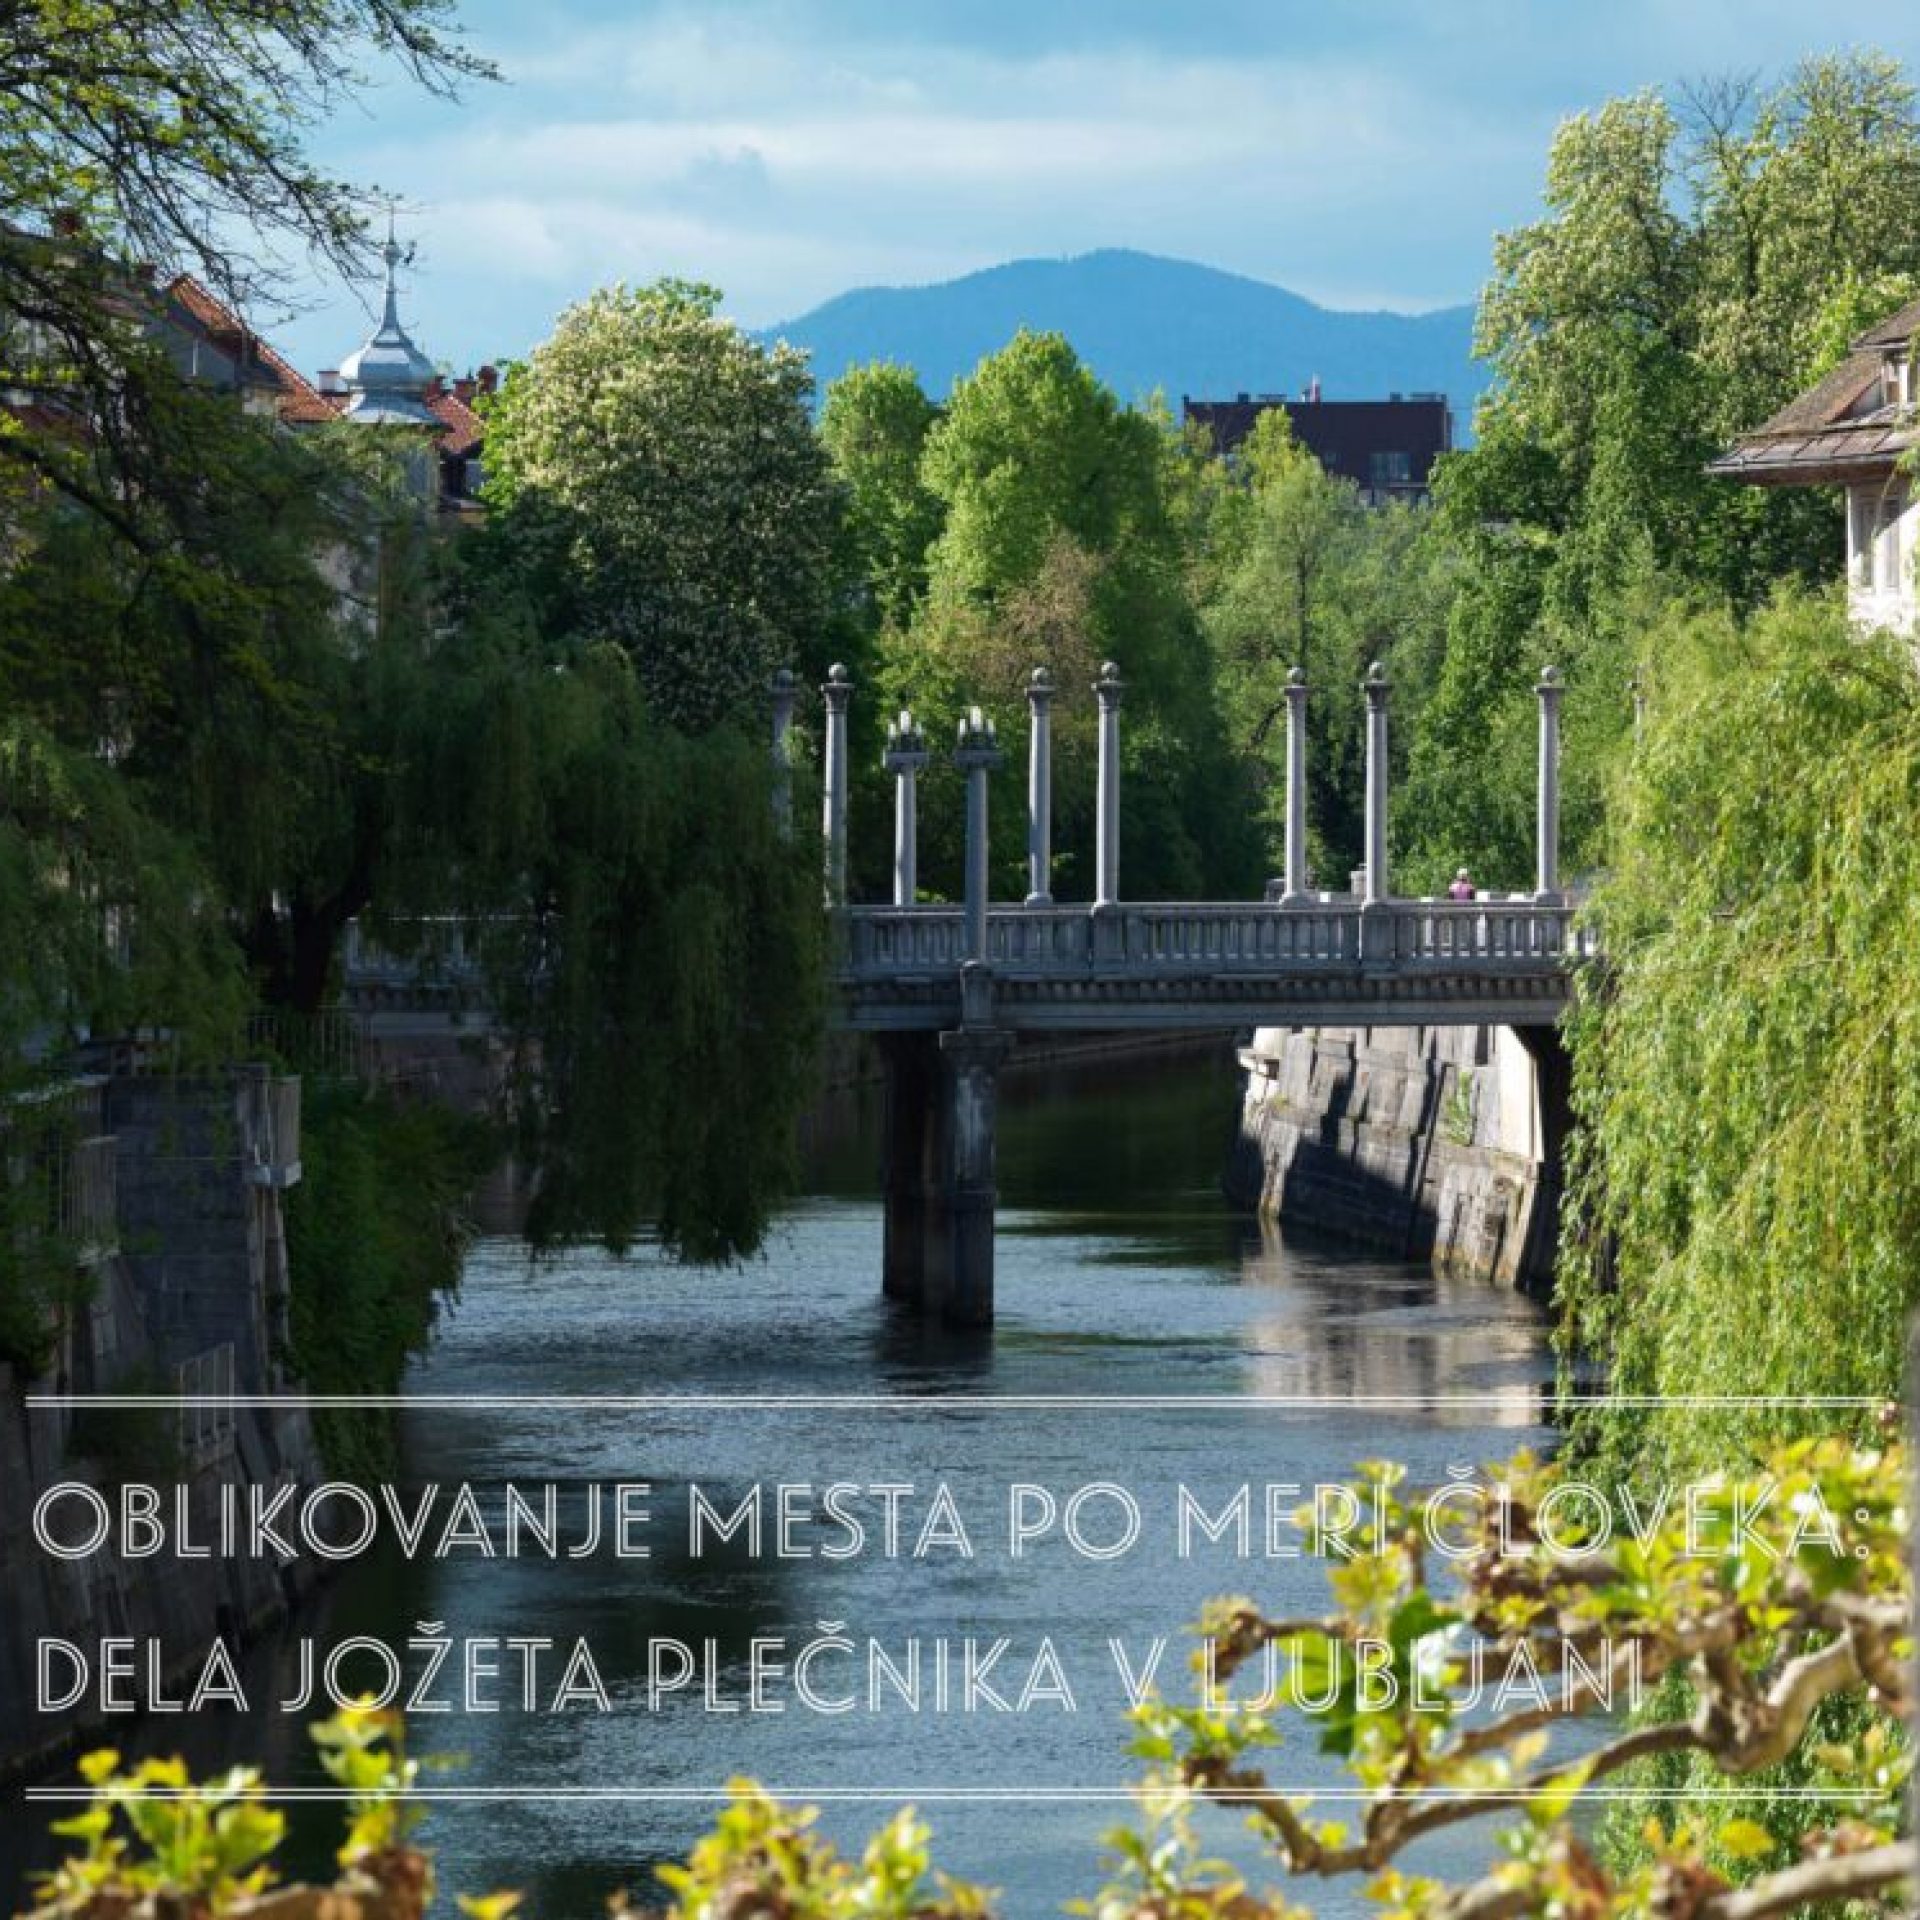 Pogovor ob začetku Plečnikovega leta: Oblikovanje mesta po meri človeka – dela Jožeta Plečnika v Ljubljani